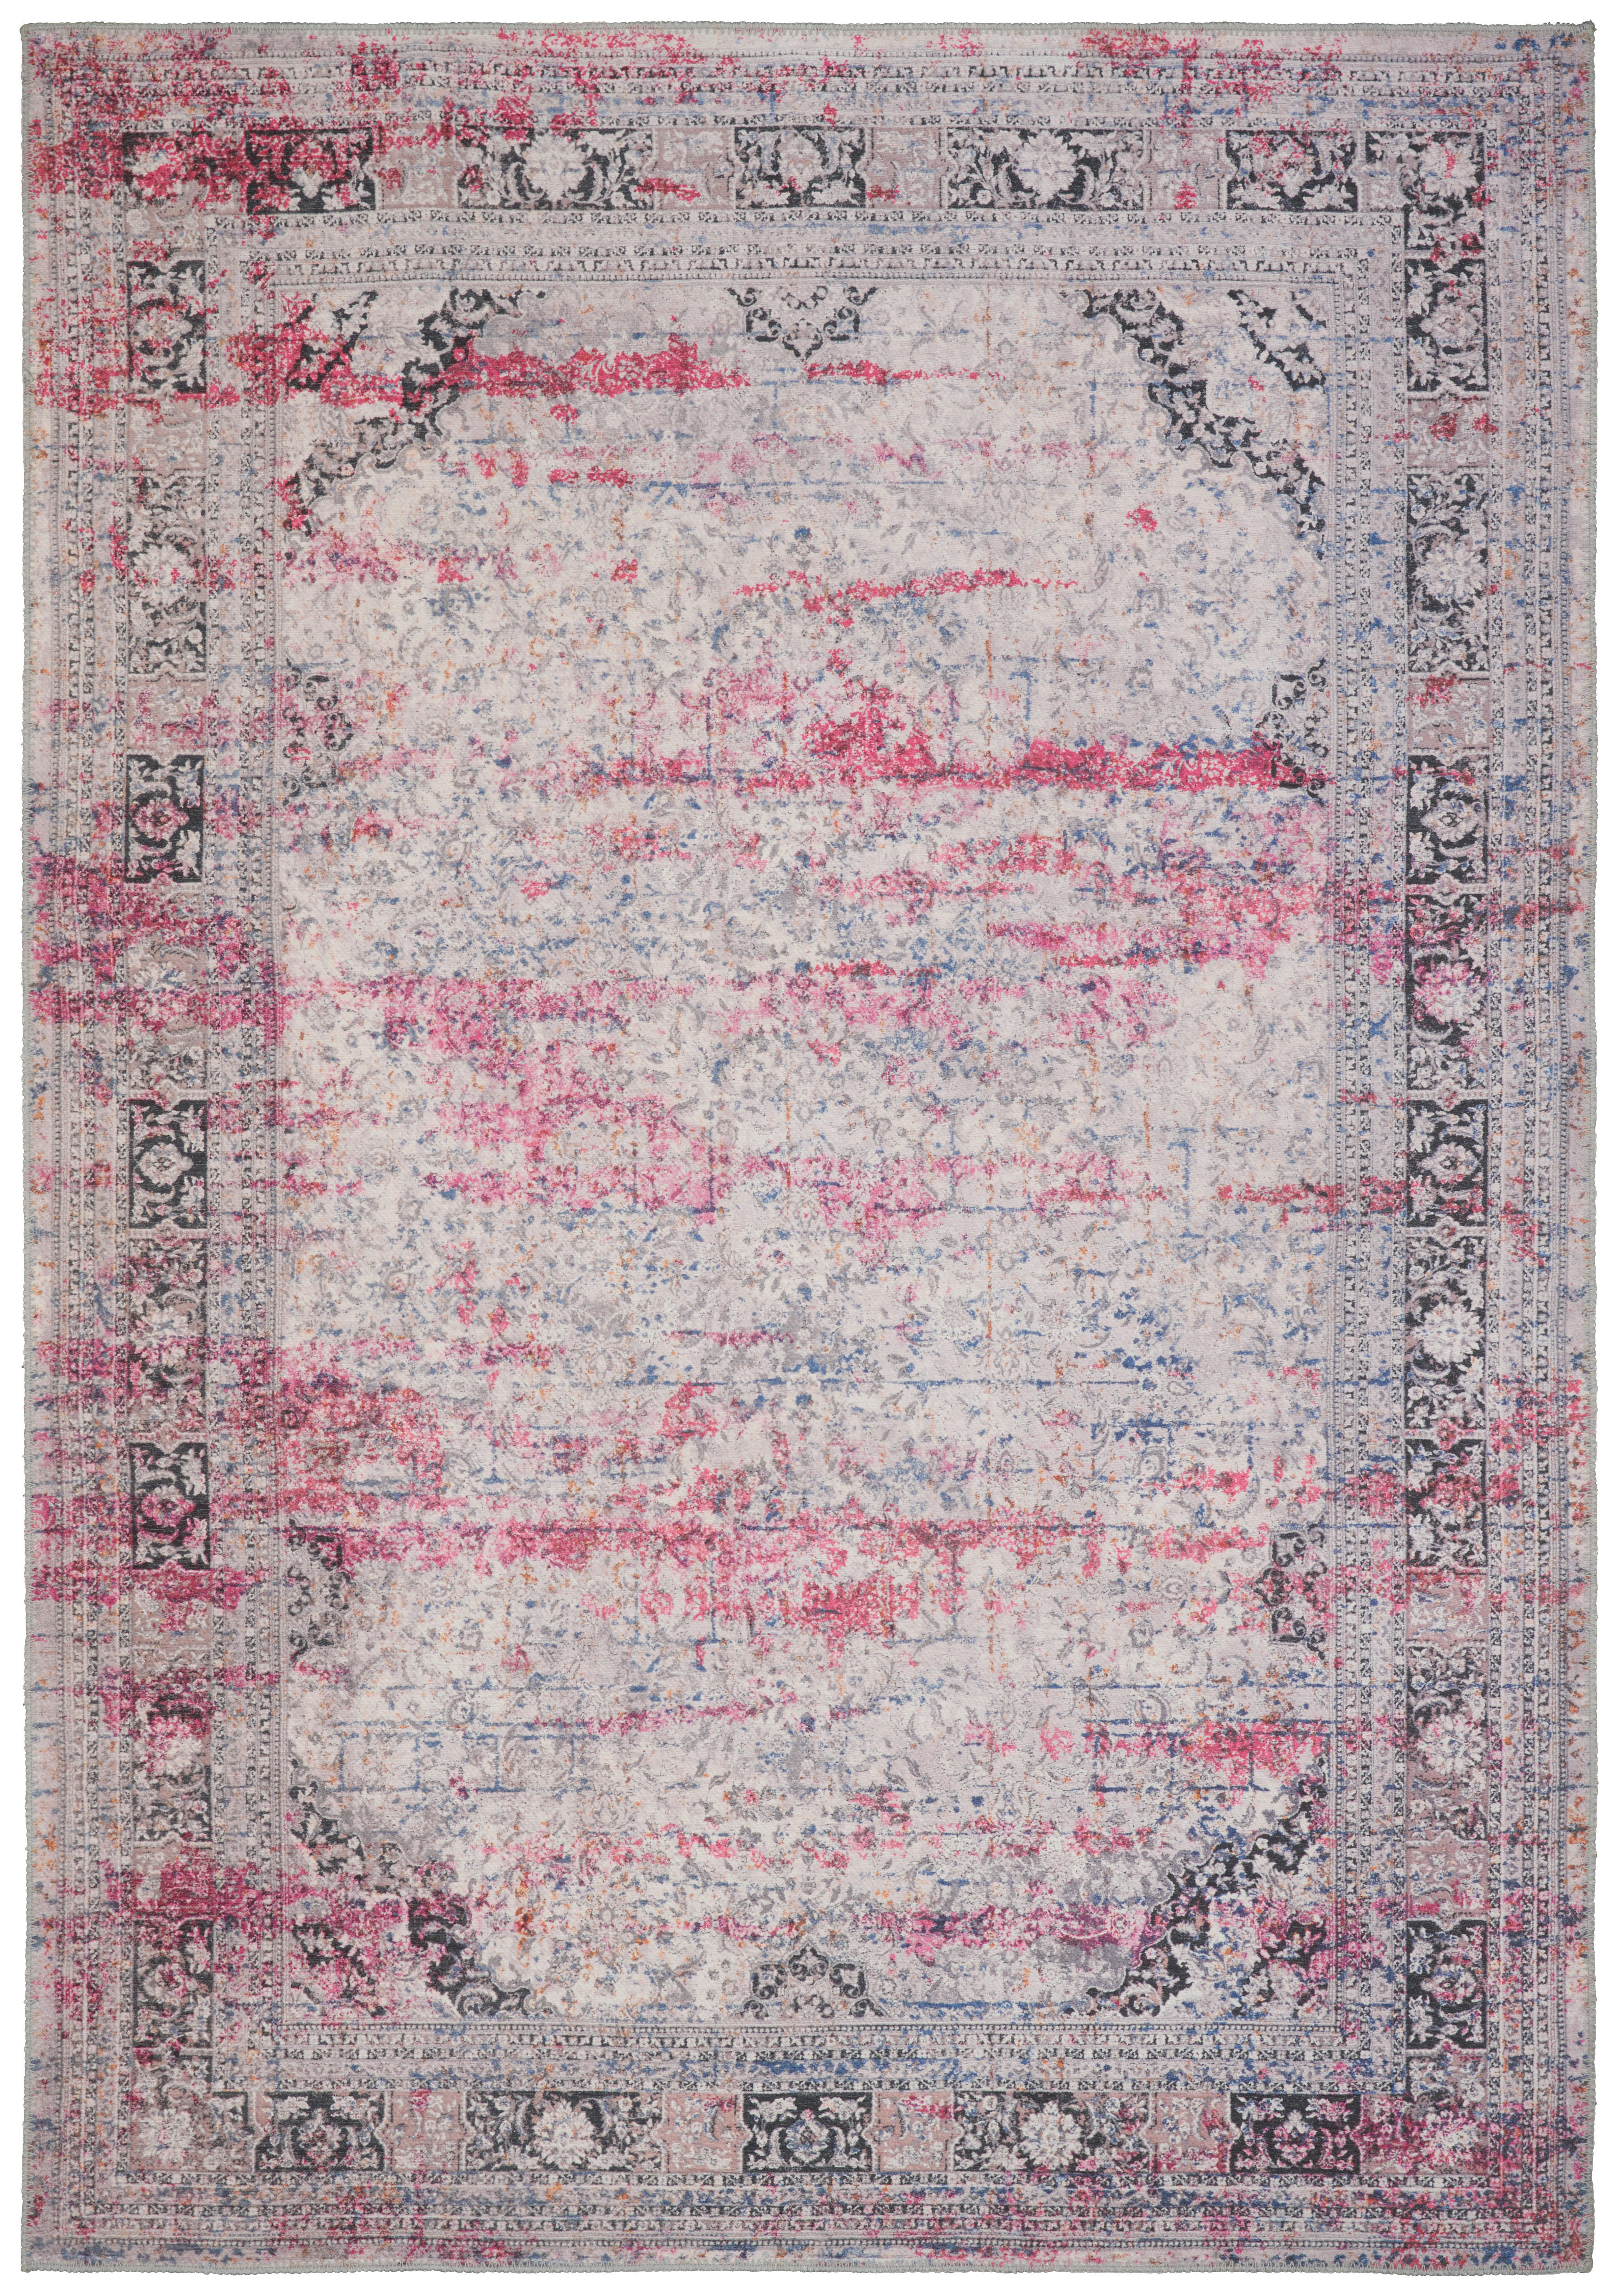 Novel VINTAGE KOBEREC, 160/230 cm, pink - pink - textil